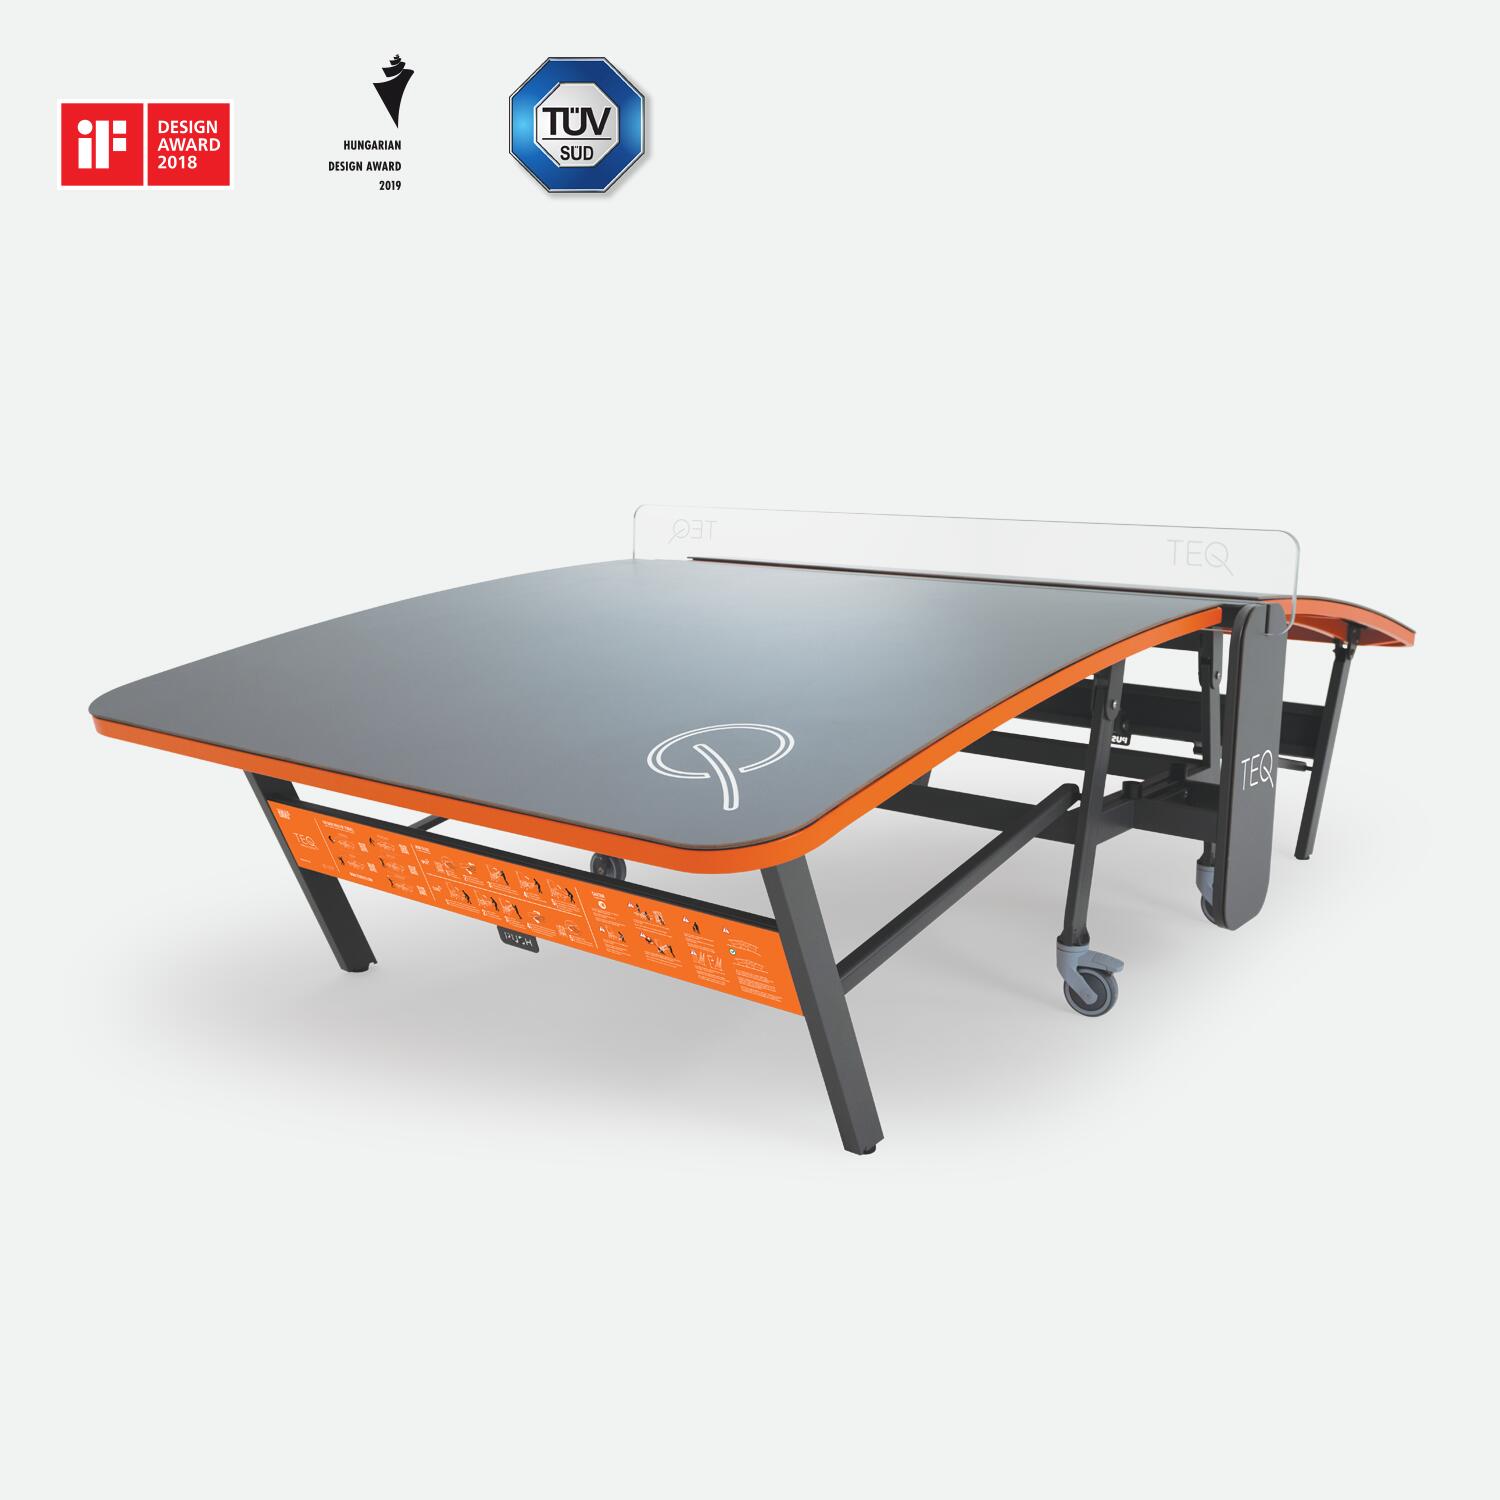 TEQ™ SMART Table - Multifunctional Sports Equipment - Outdoor/Indoor 1/6